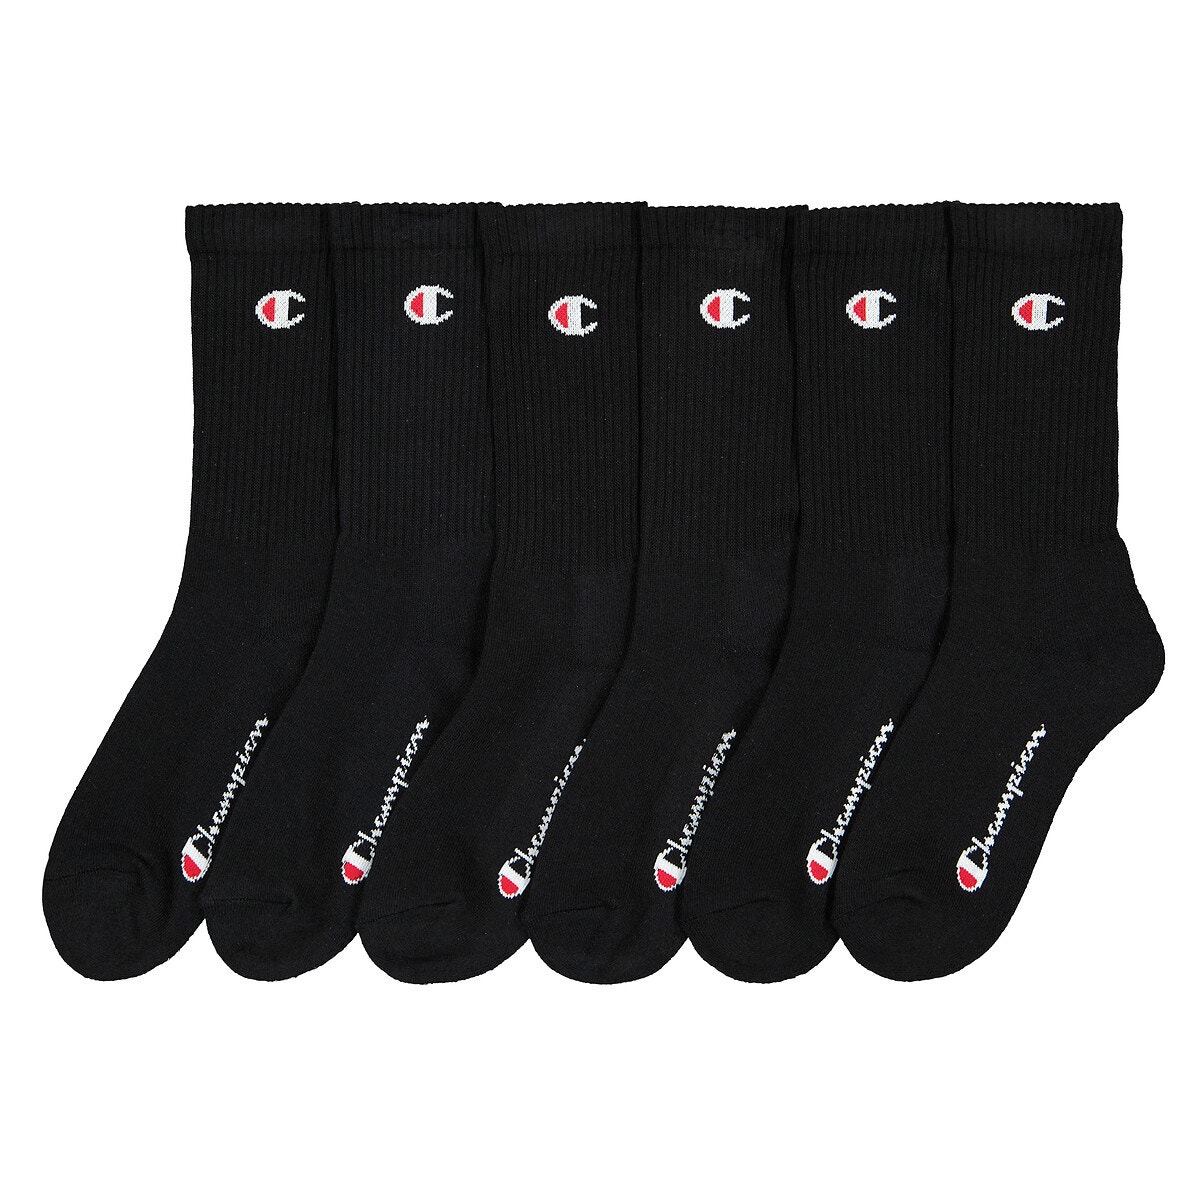 Σετ 6 ζευγάρια κάλτσες με λογότυπο